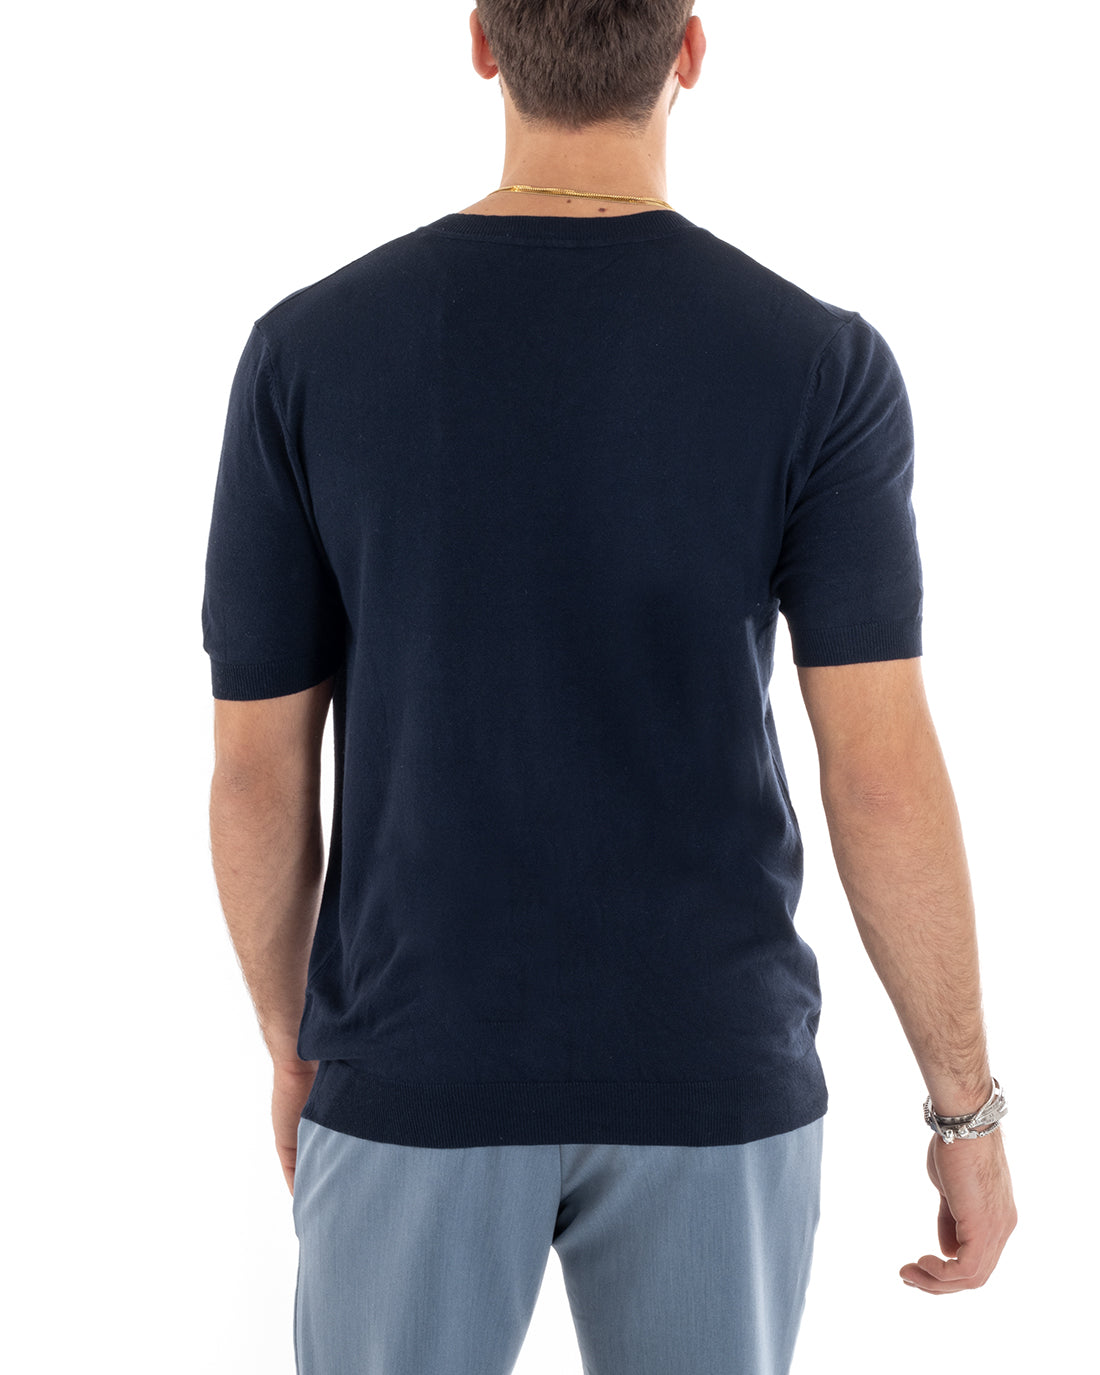 T-shirt Uomo Filo Manica Corta Tinta Unita Blu Scollo a V Casual GIOSAL-TS2867A